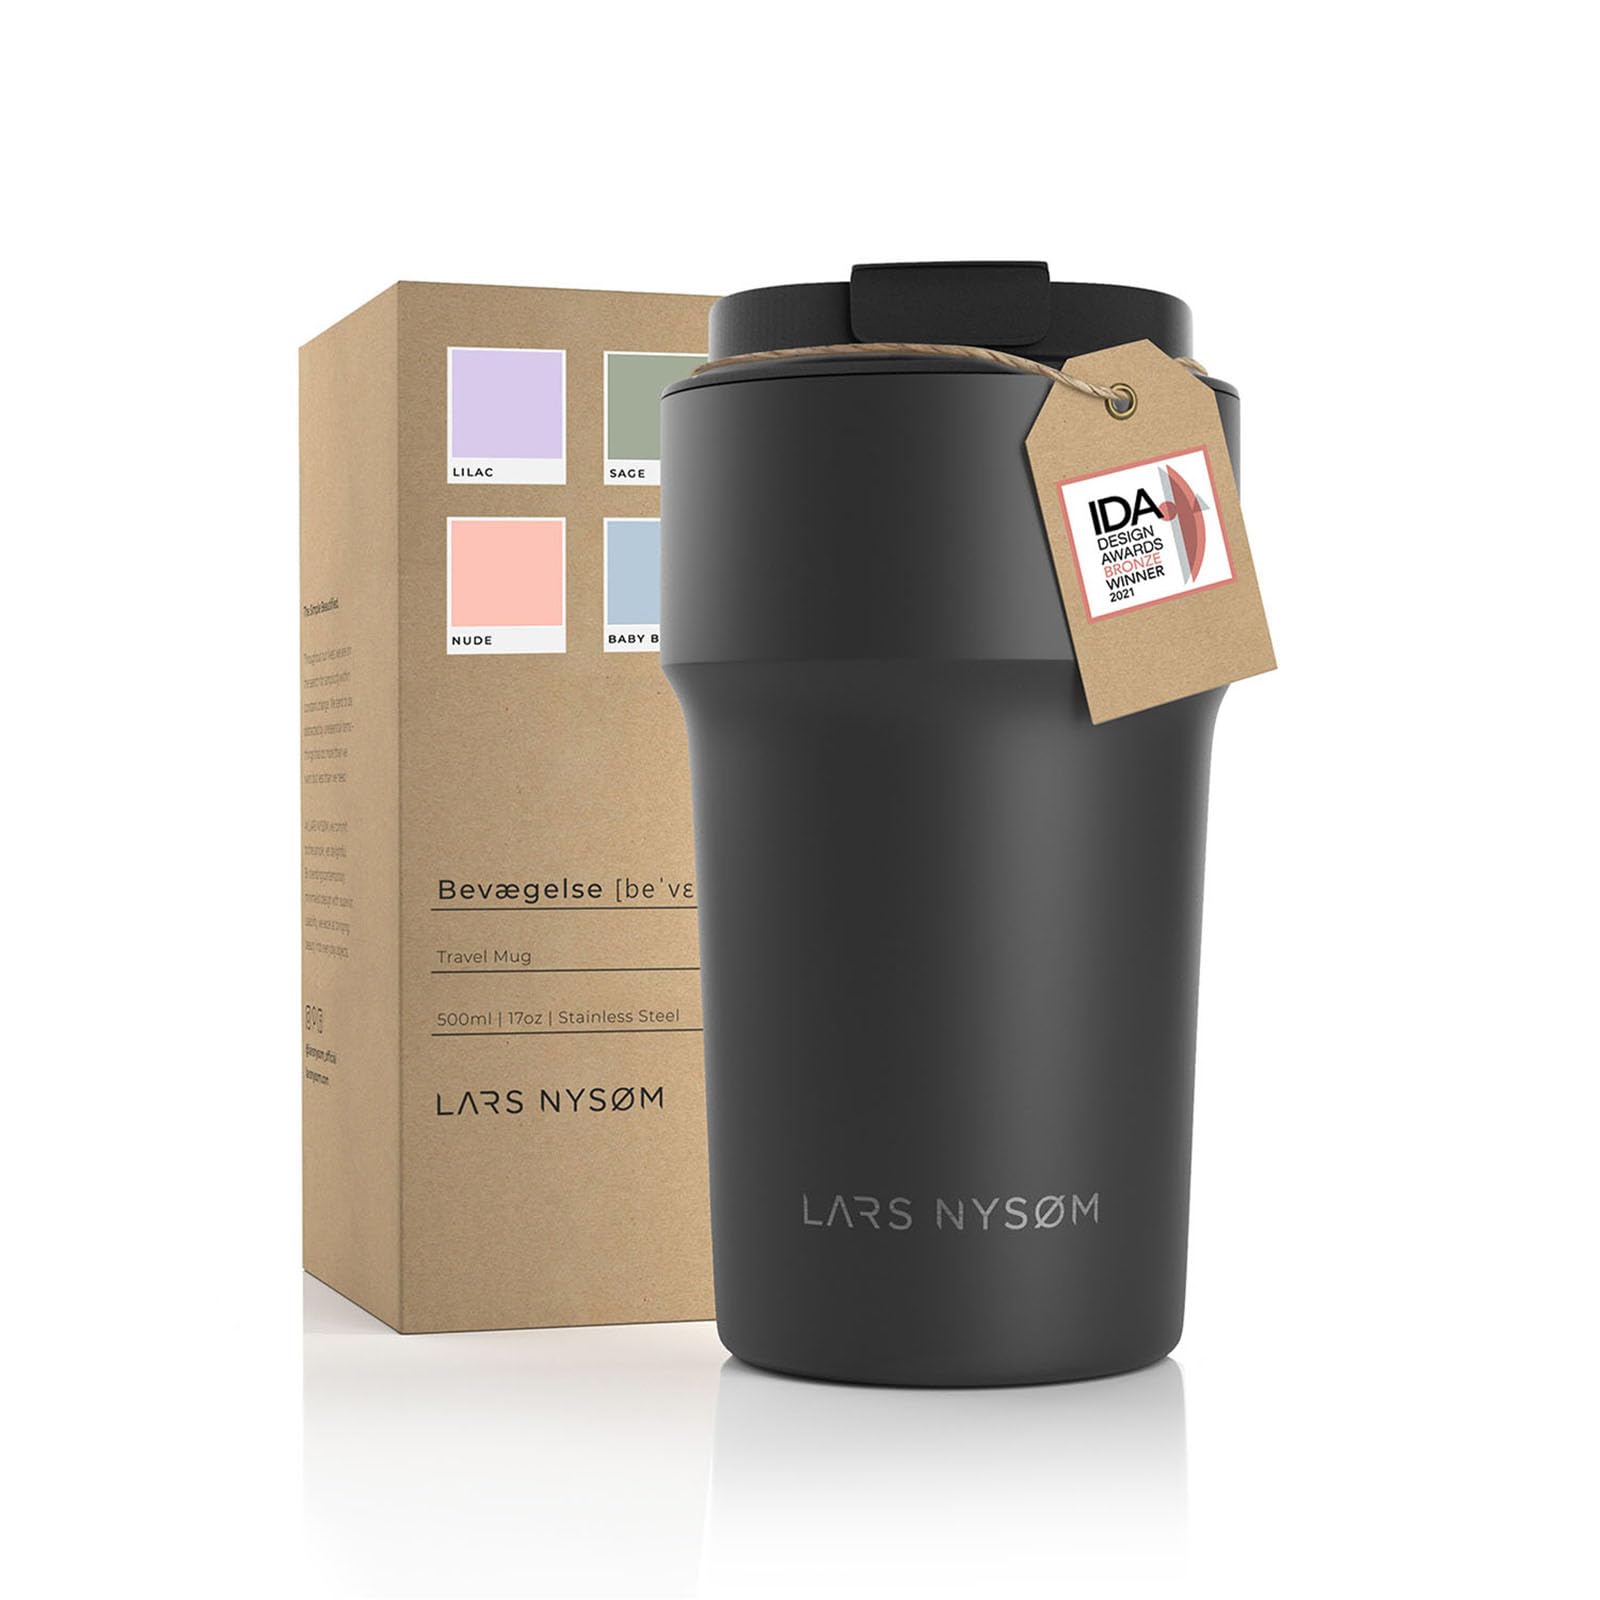 LARS NYSØM Thermo Kaffeebecher-to-go 500ml | BPA-freier Travel Mug 0.5 Liter mit Isolierung | Auslaufsicherer Edelstahl Thermobecher für Kaffee und Tee unterwegs | Teebecher (Onyx Black, 500ml)